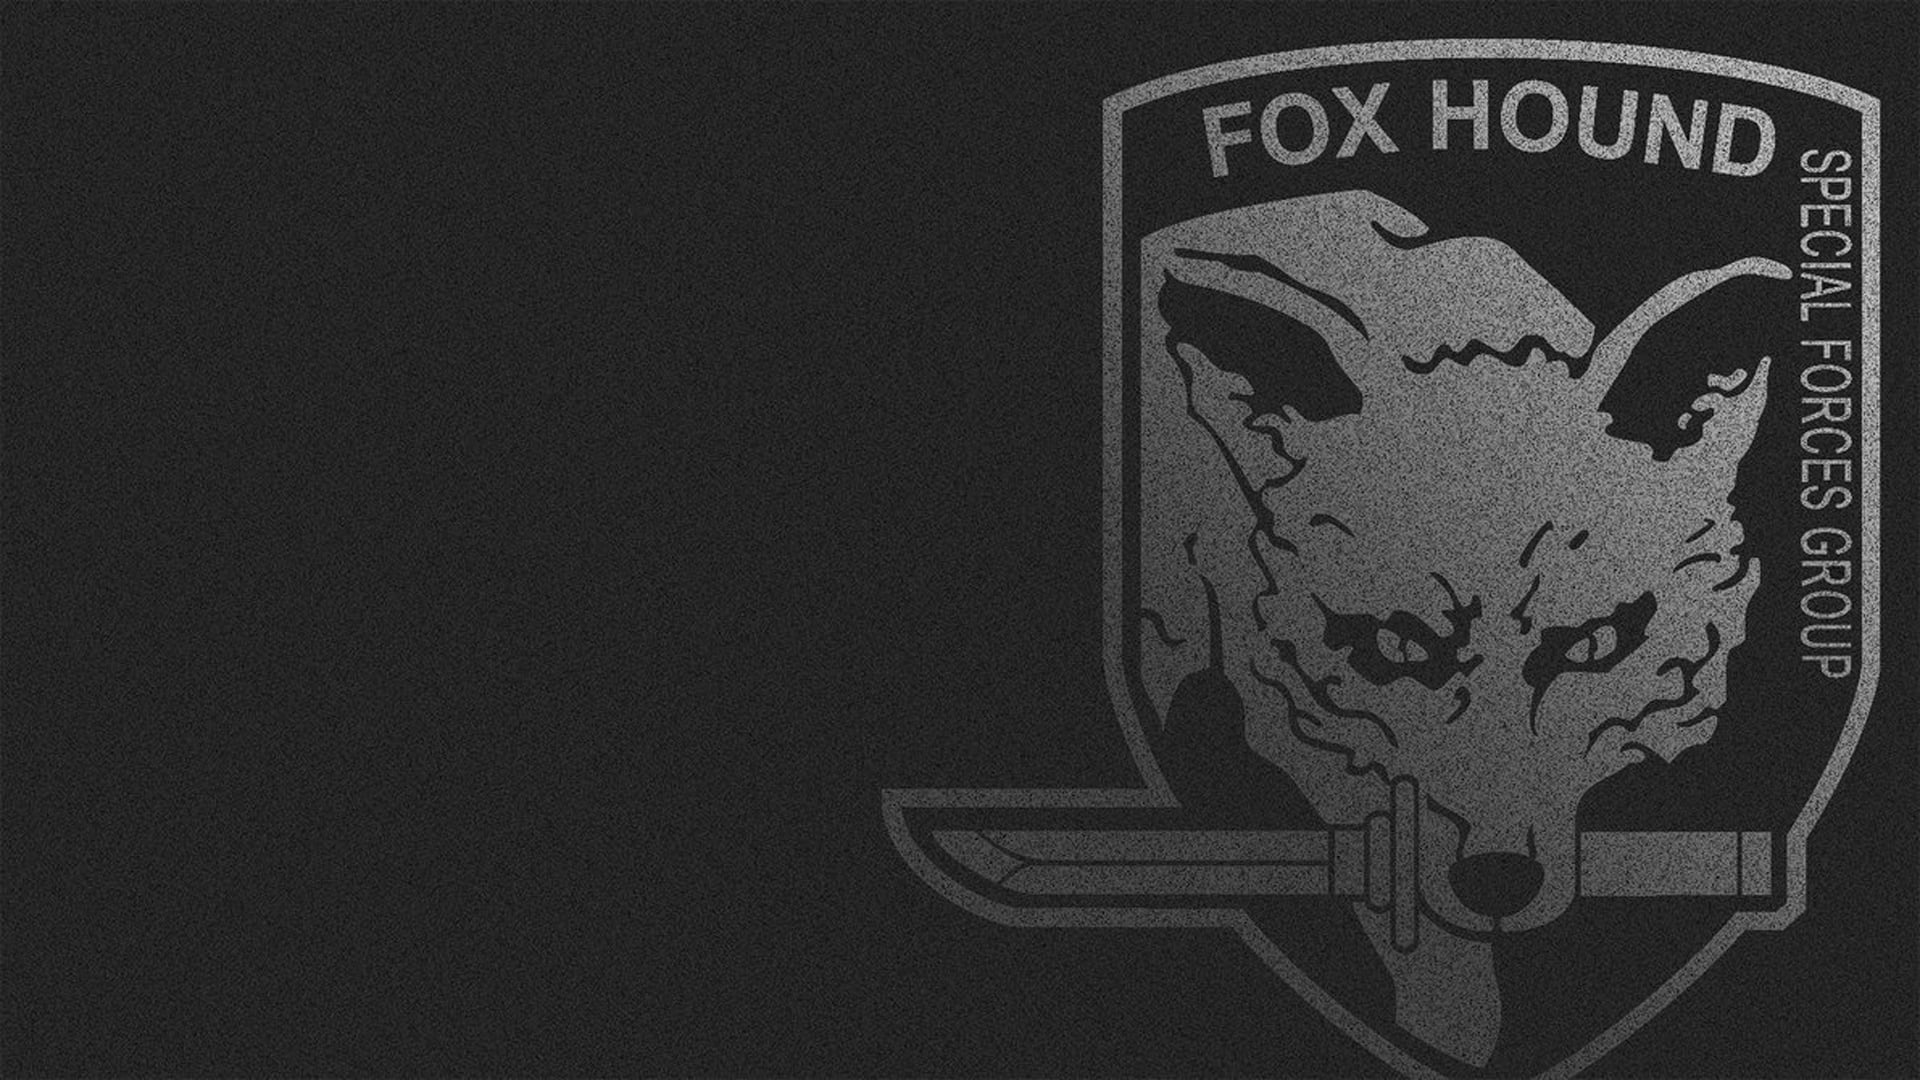 Fox hound. Metal Gear Solid Foxhound. Foxhound Metal Gear. Foxhound MGS 5. Metal Gear Foxhound logo.